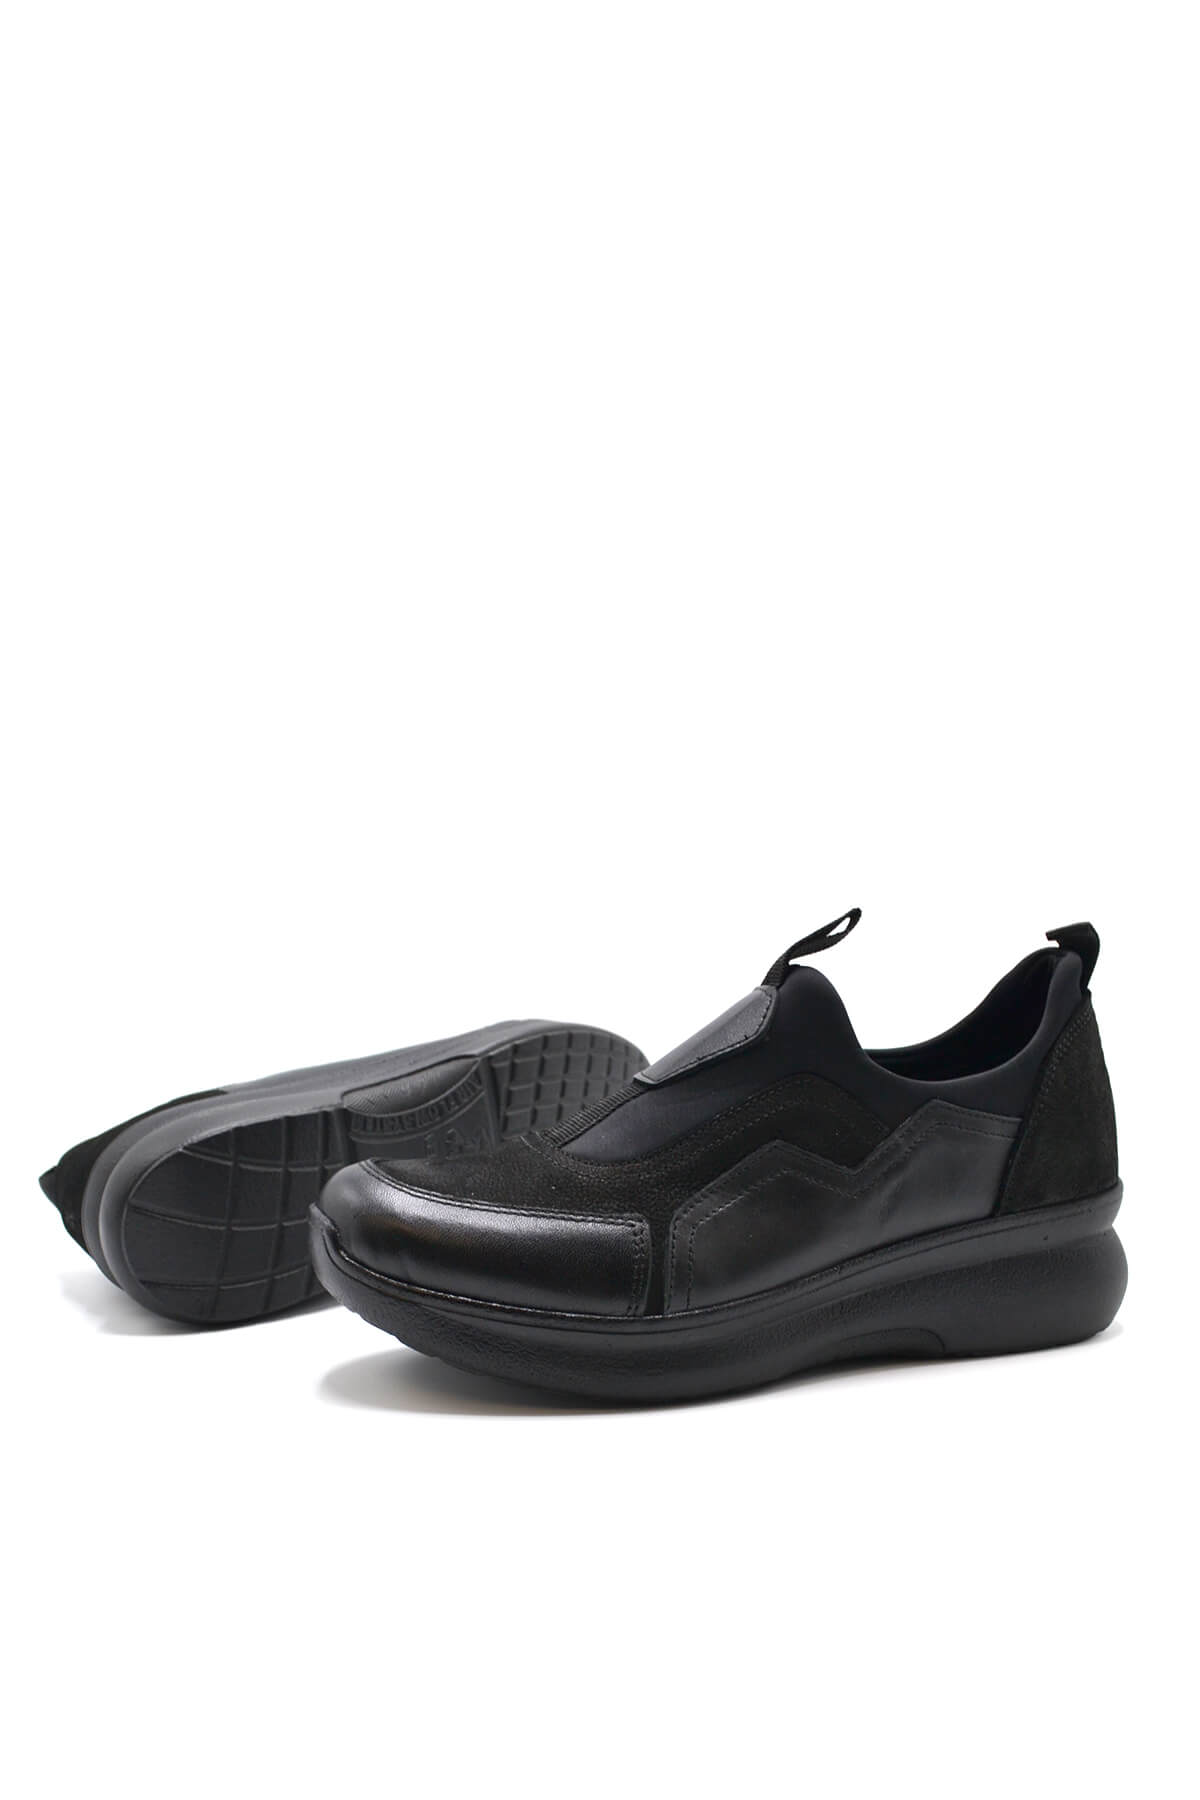 Kadın Airflow Deri Ayakkabı Siyah 1901793K - Thumbnail